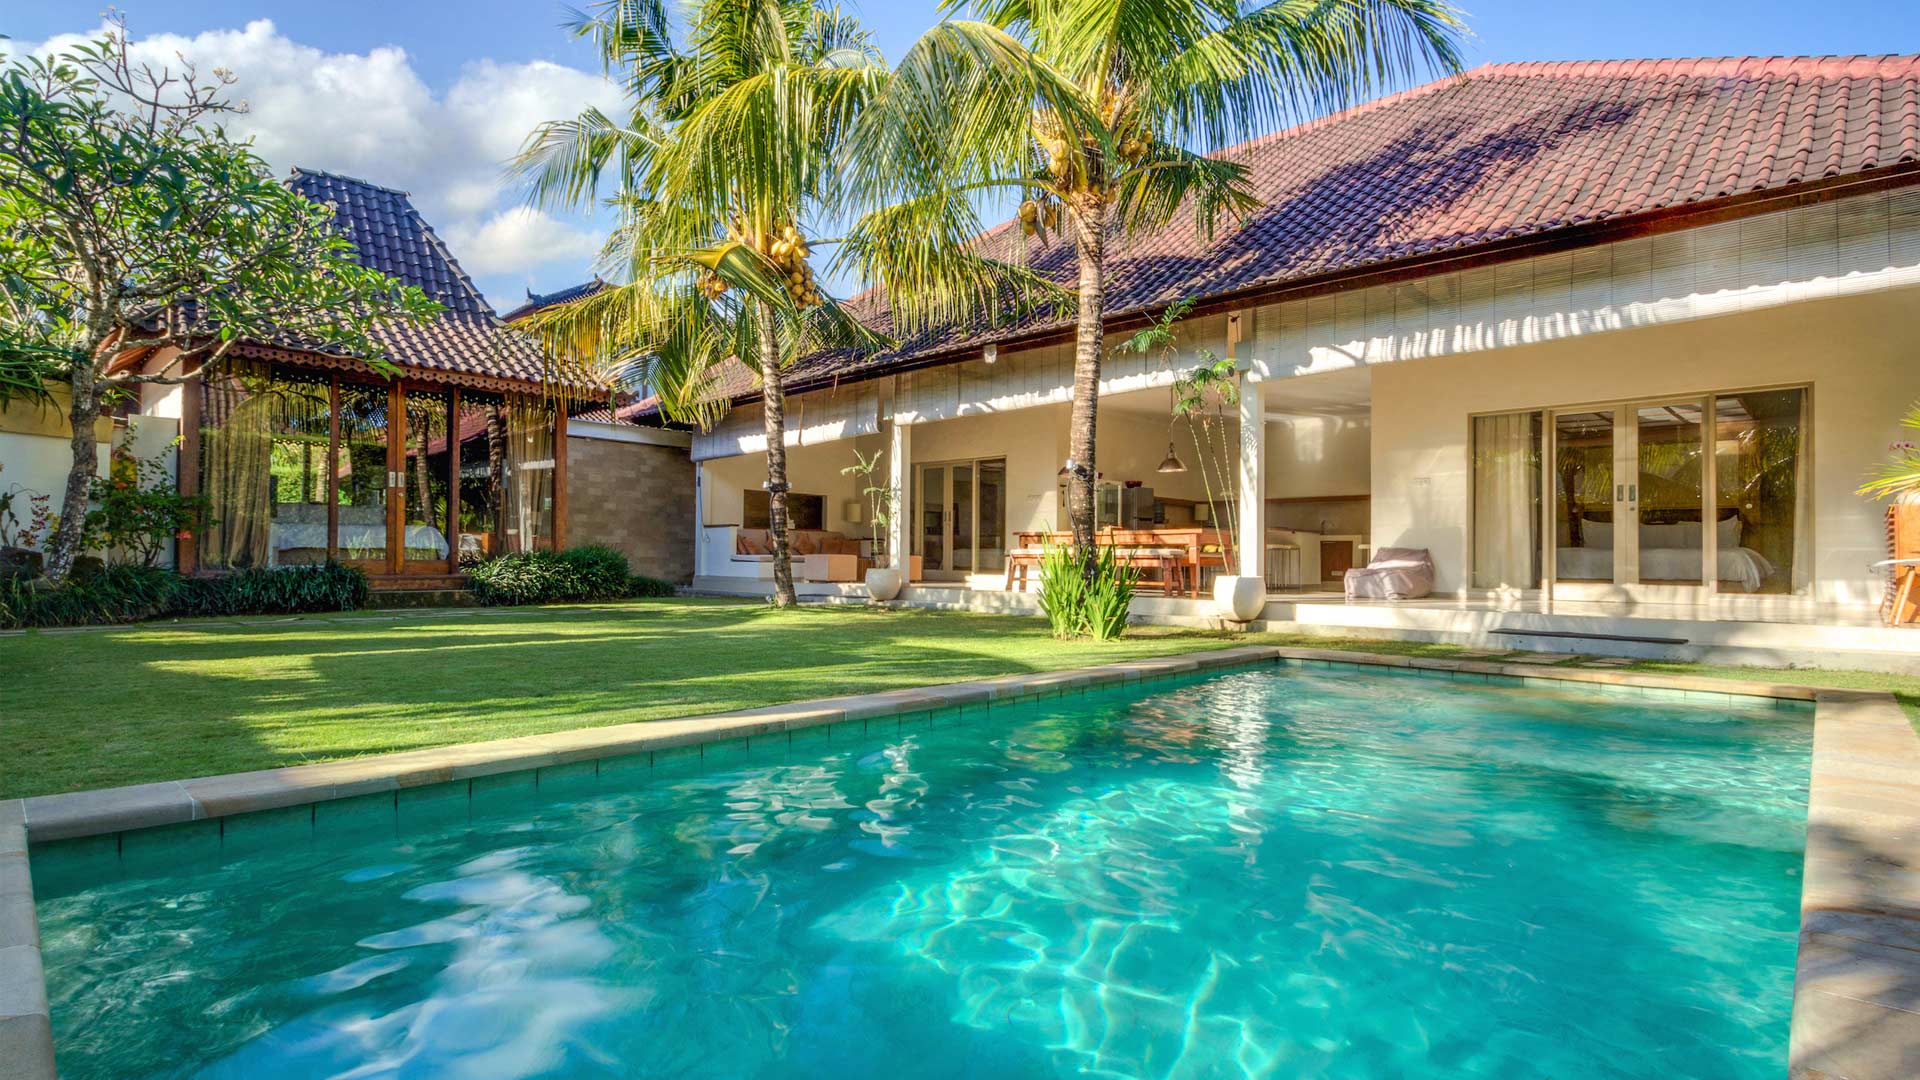 Bali Villas & Seminyak Villas for rent - Best Price Guarantee